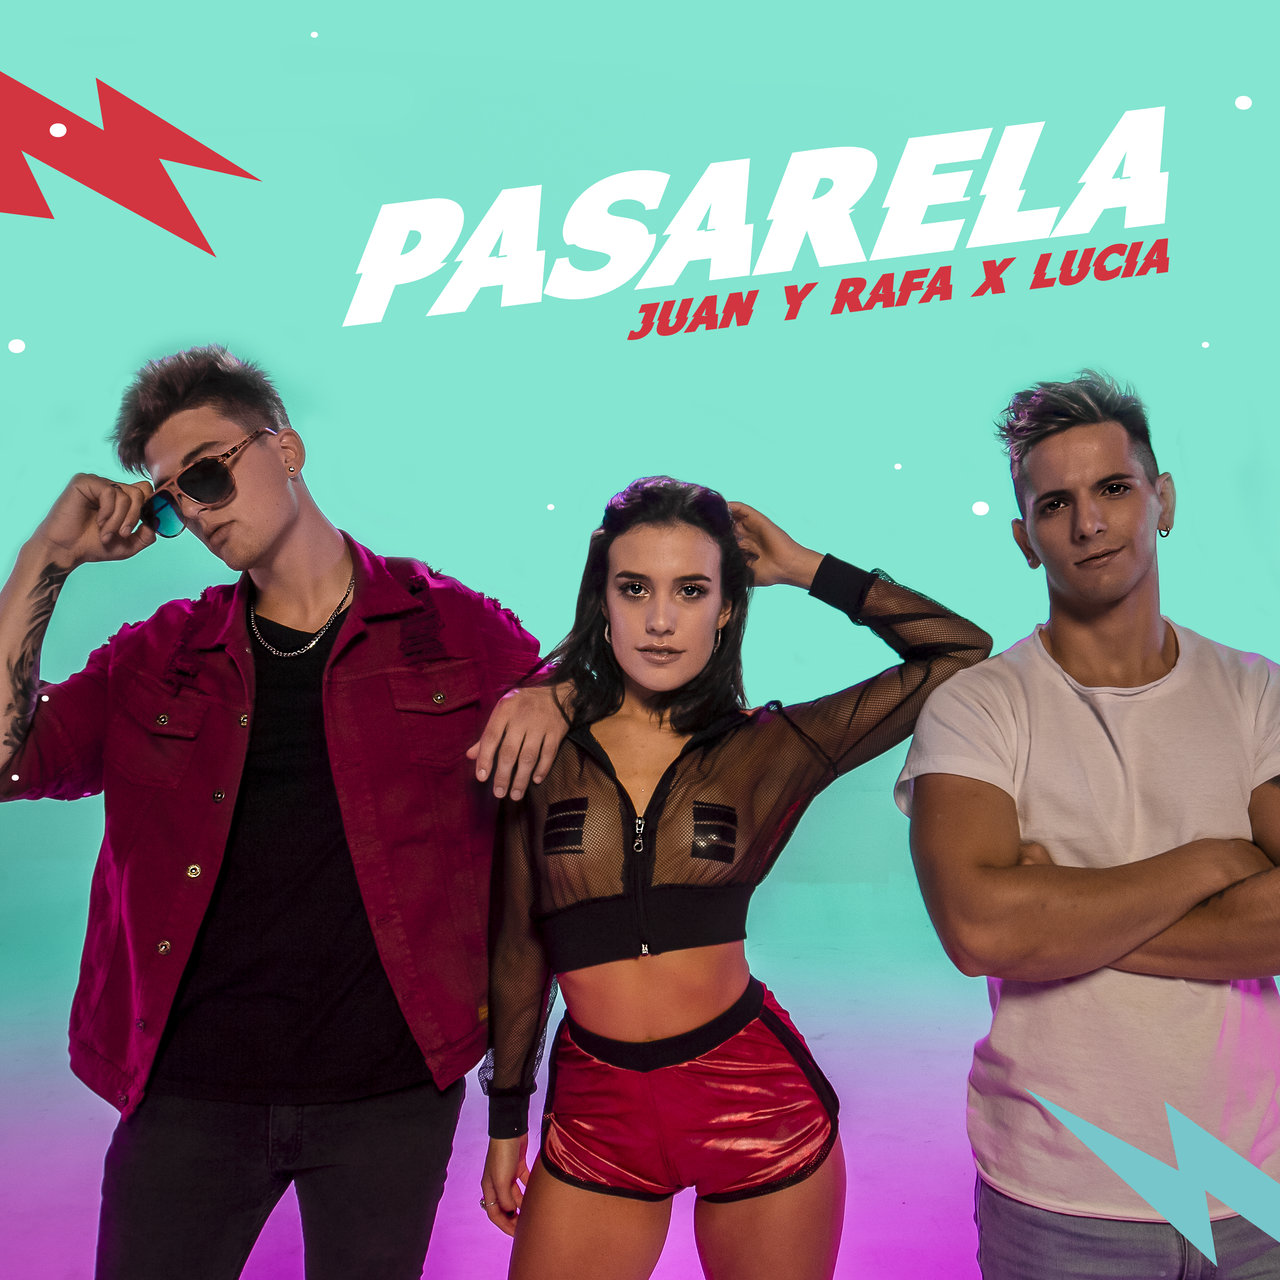 Juan y Rafa & Lucía — Pasarela cover artwork